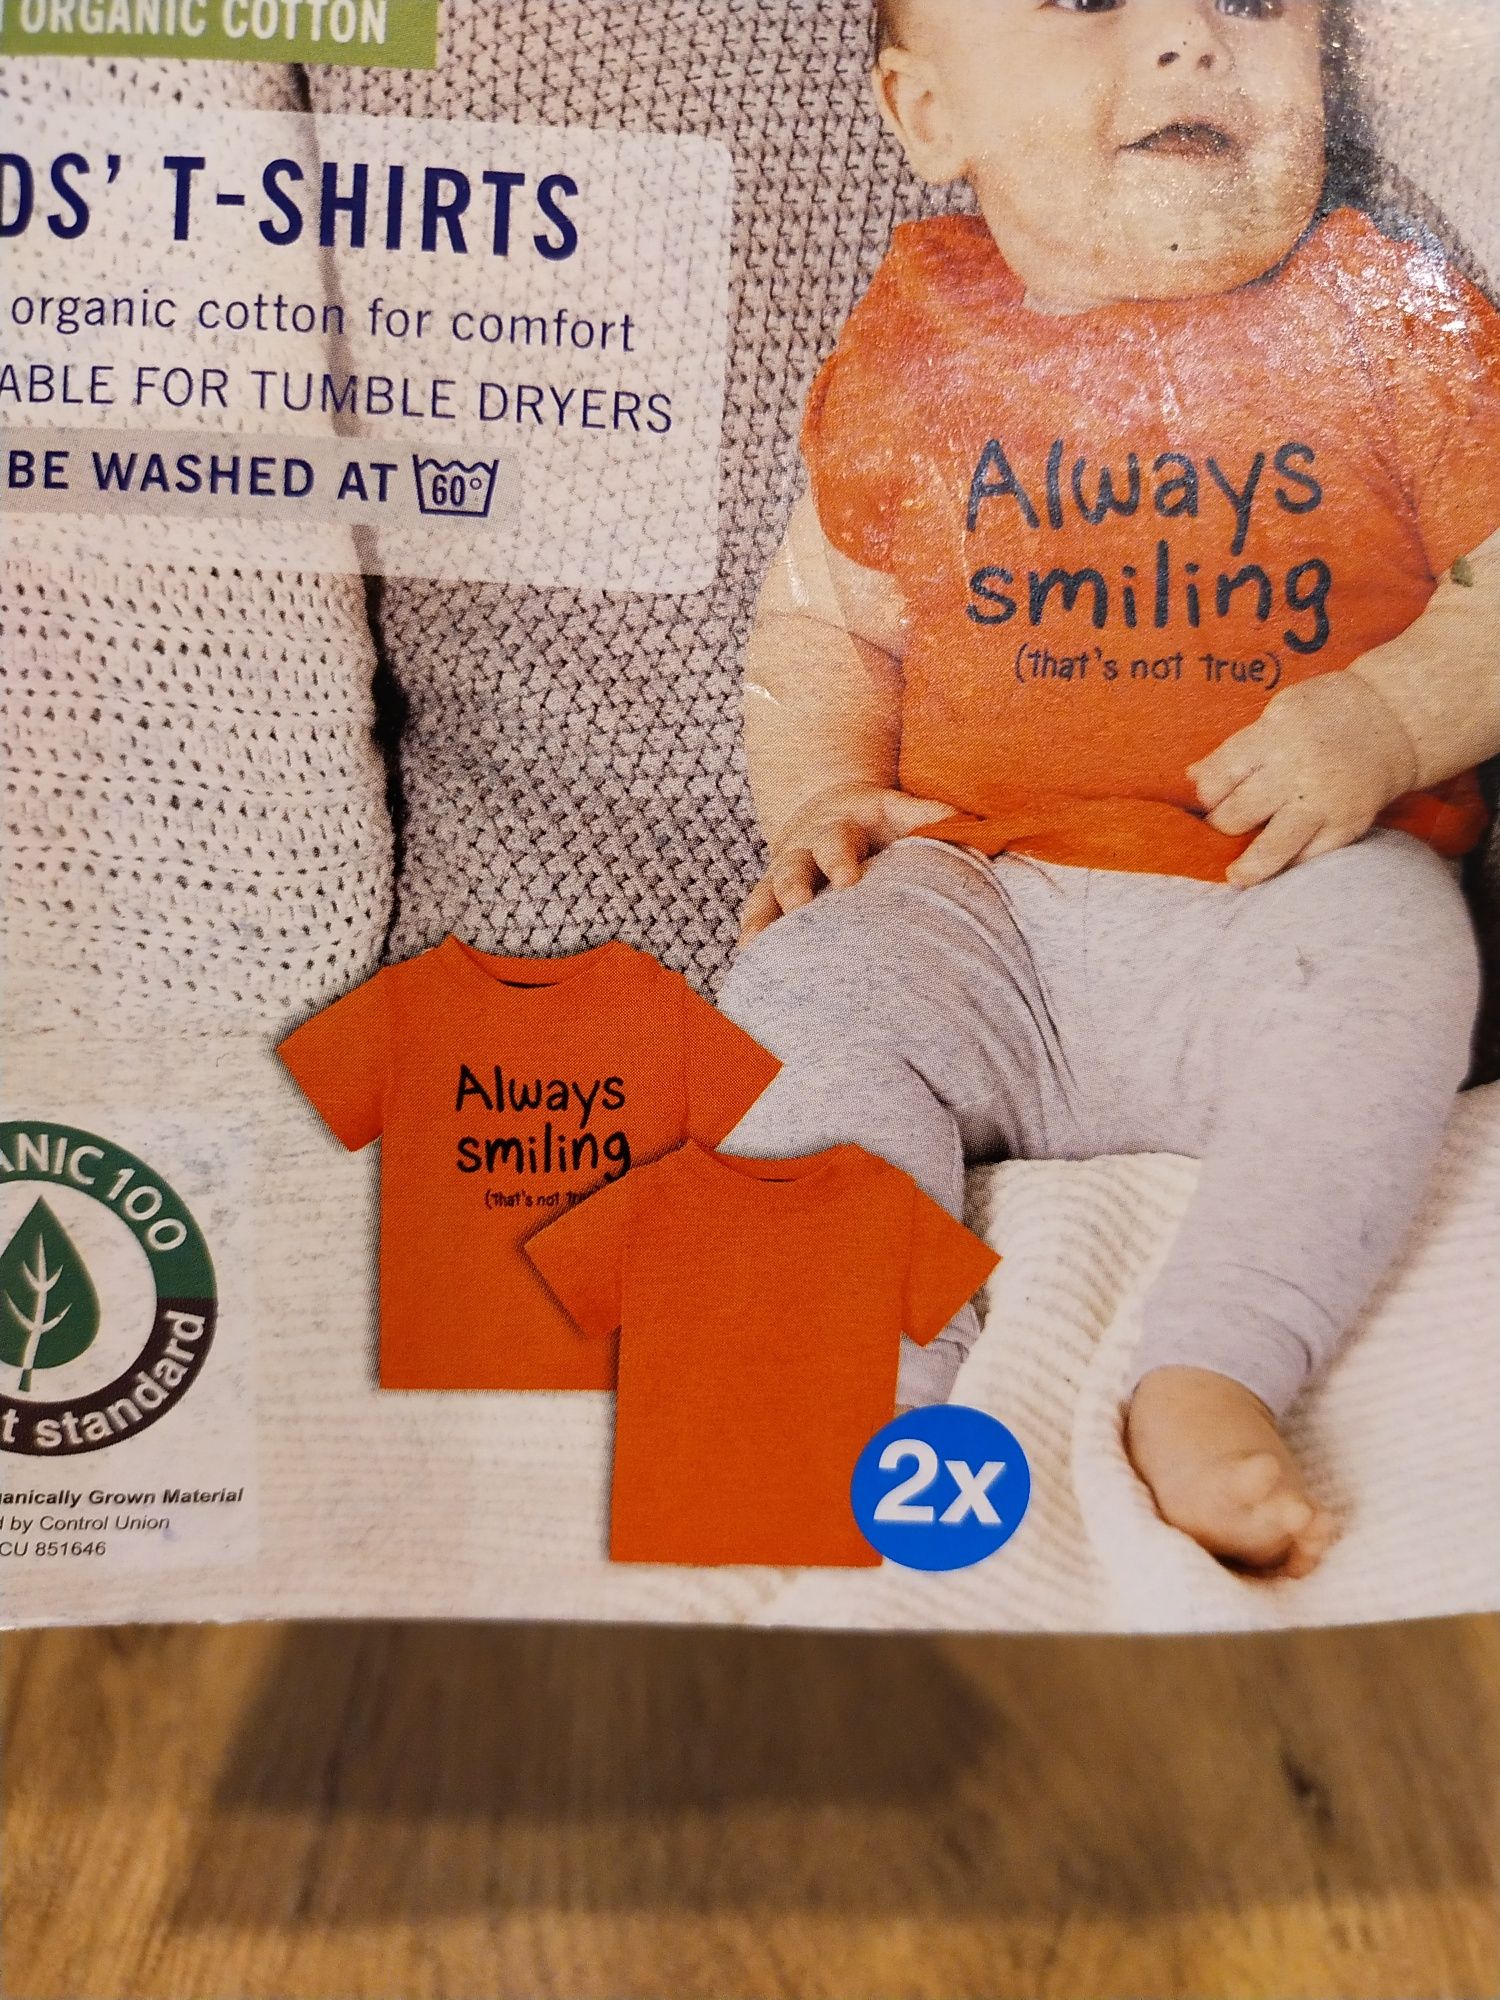 Koszulki niemowlęce 74/80 dla chłopca